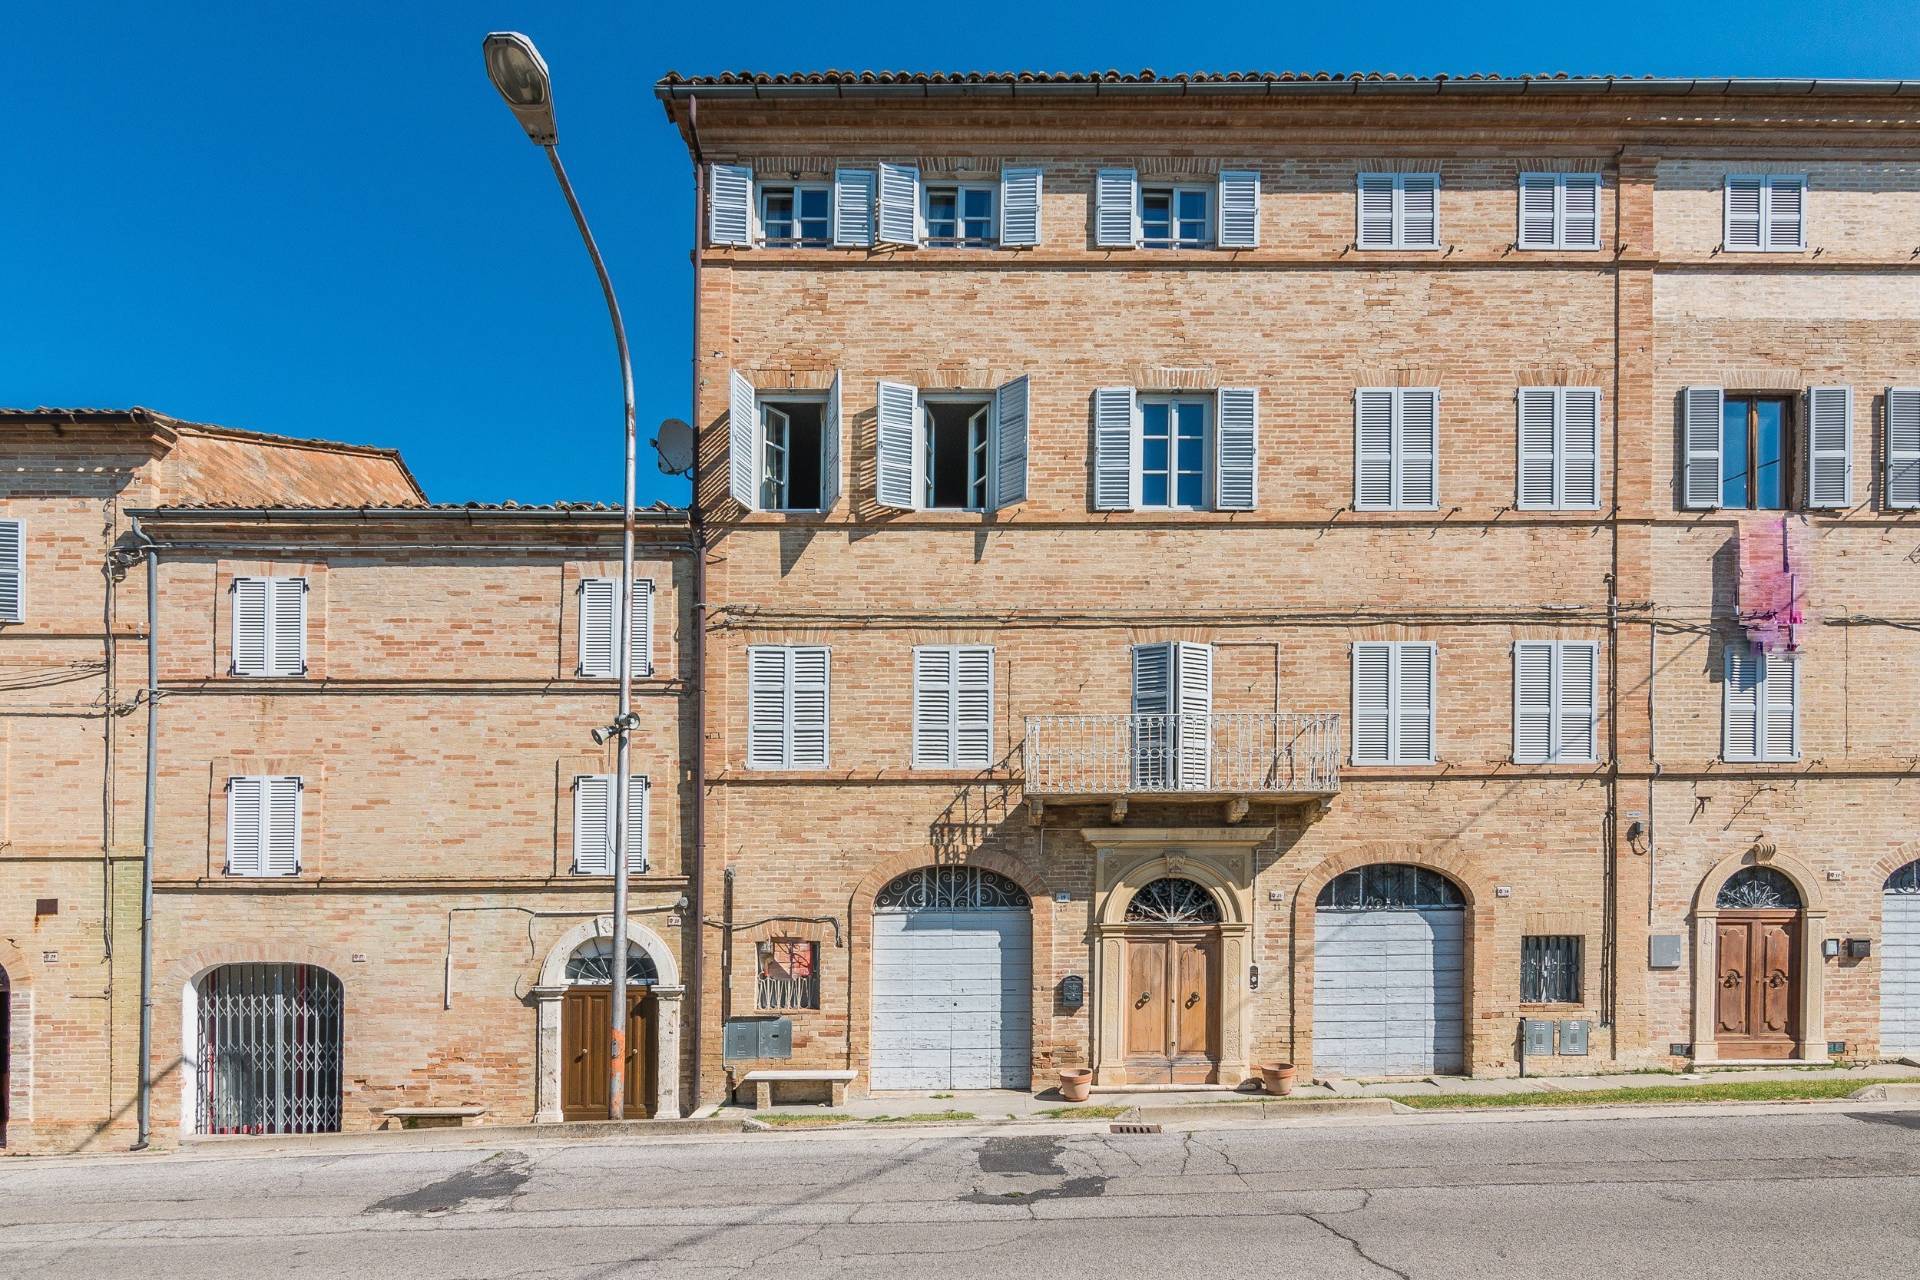 Apartment in Petritoli (Fermo)